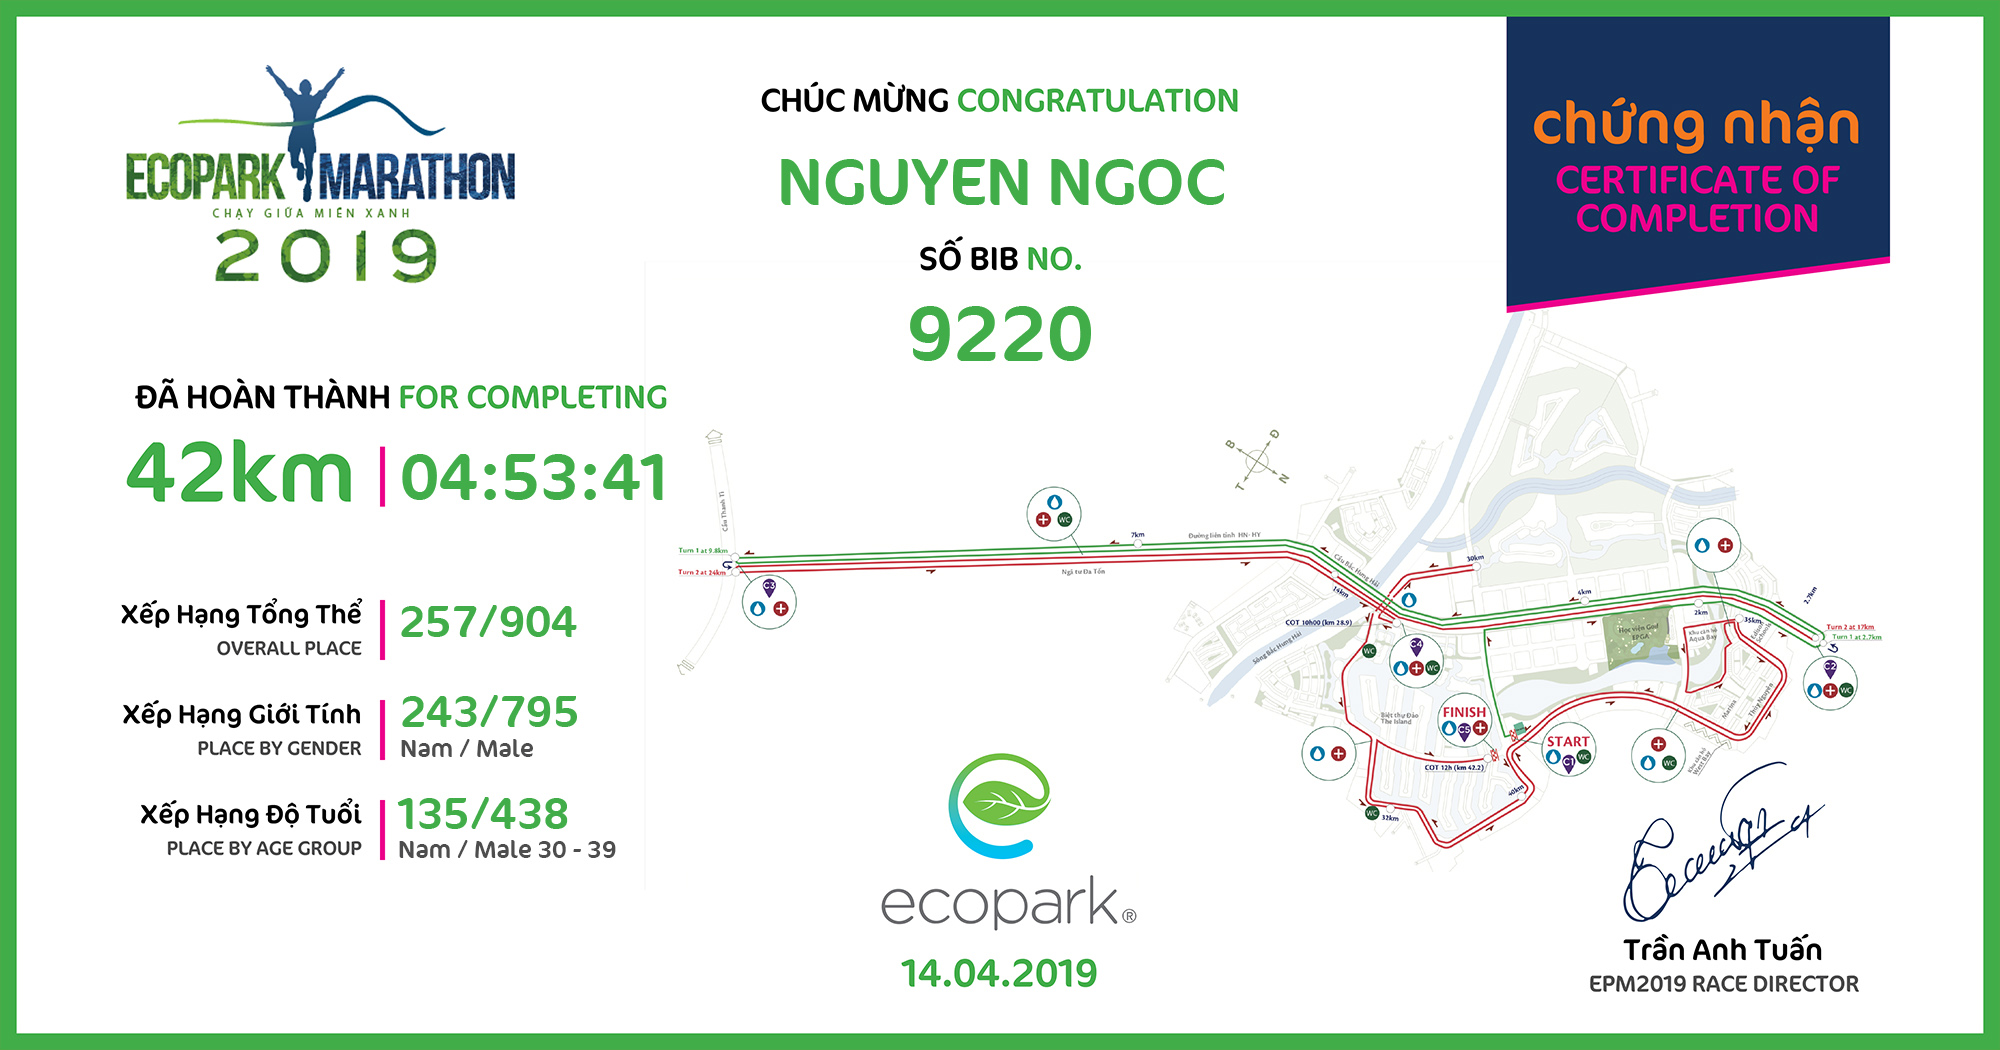 9220 - Nguyen Ngoc